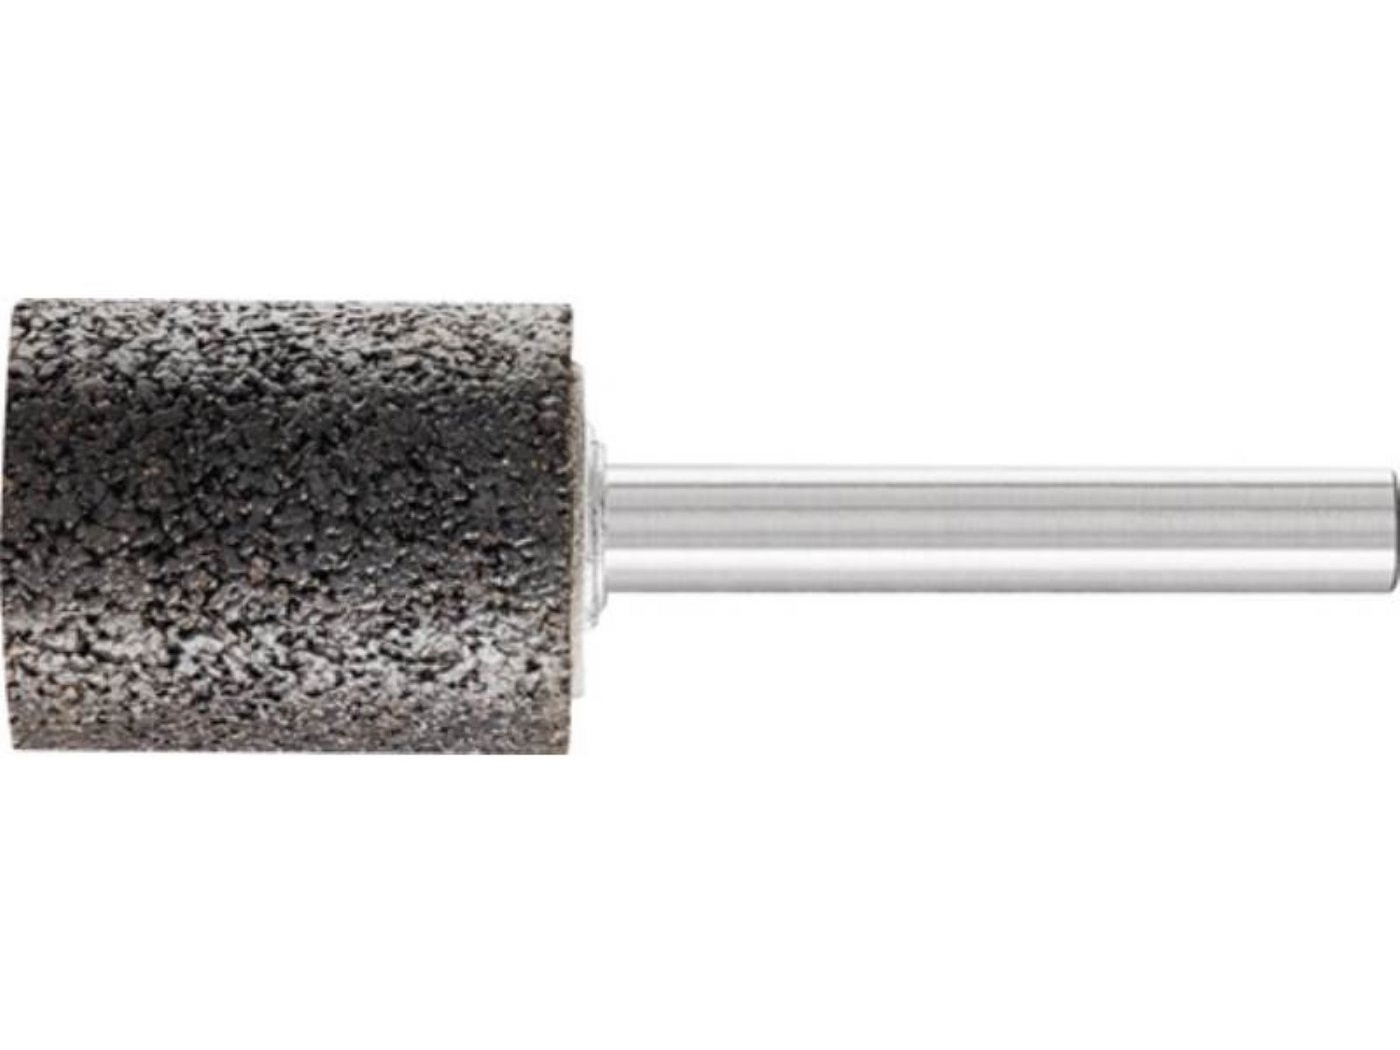 Bild von ZY 5025 6 AN 24 N5B INOX EDGE Zylinderstift Schleifstift 50x25mm K24, 5er-Pack (31332612)